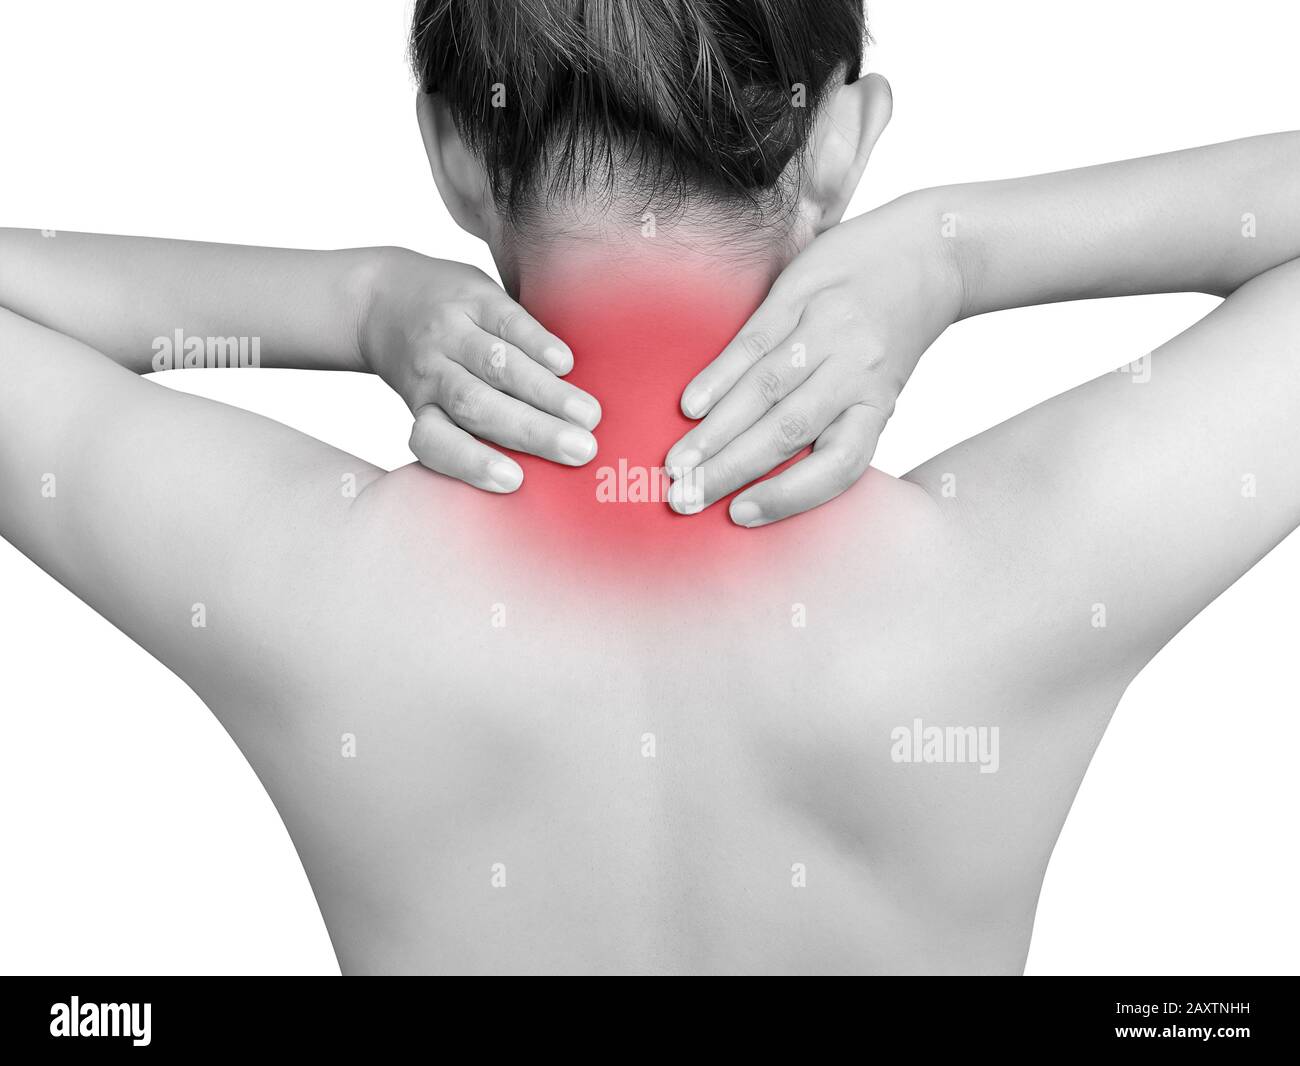 Donna asiatica che soffre di dolore al collo. Tono mono con colore rosso al collo isolato su sfondo bianco. Assistenza sanitaria e concetto medico Foto Stock